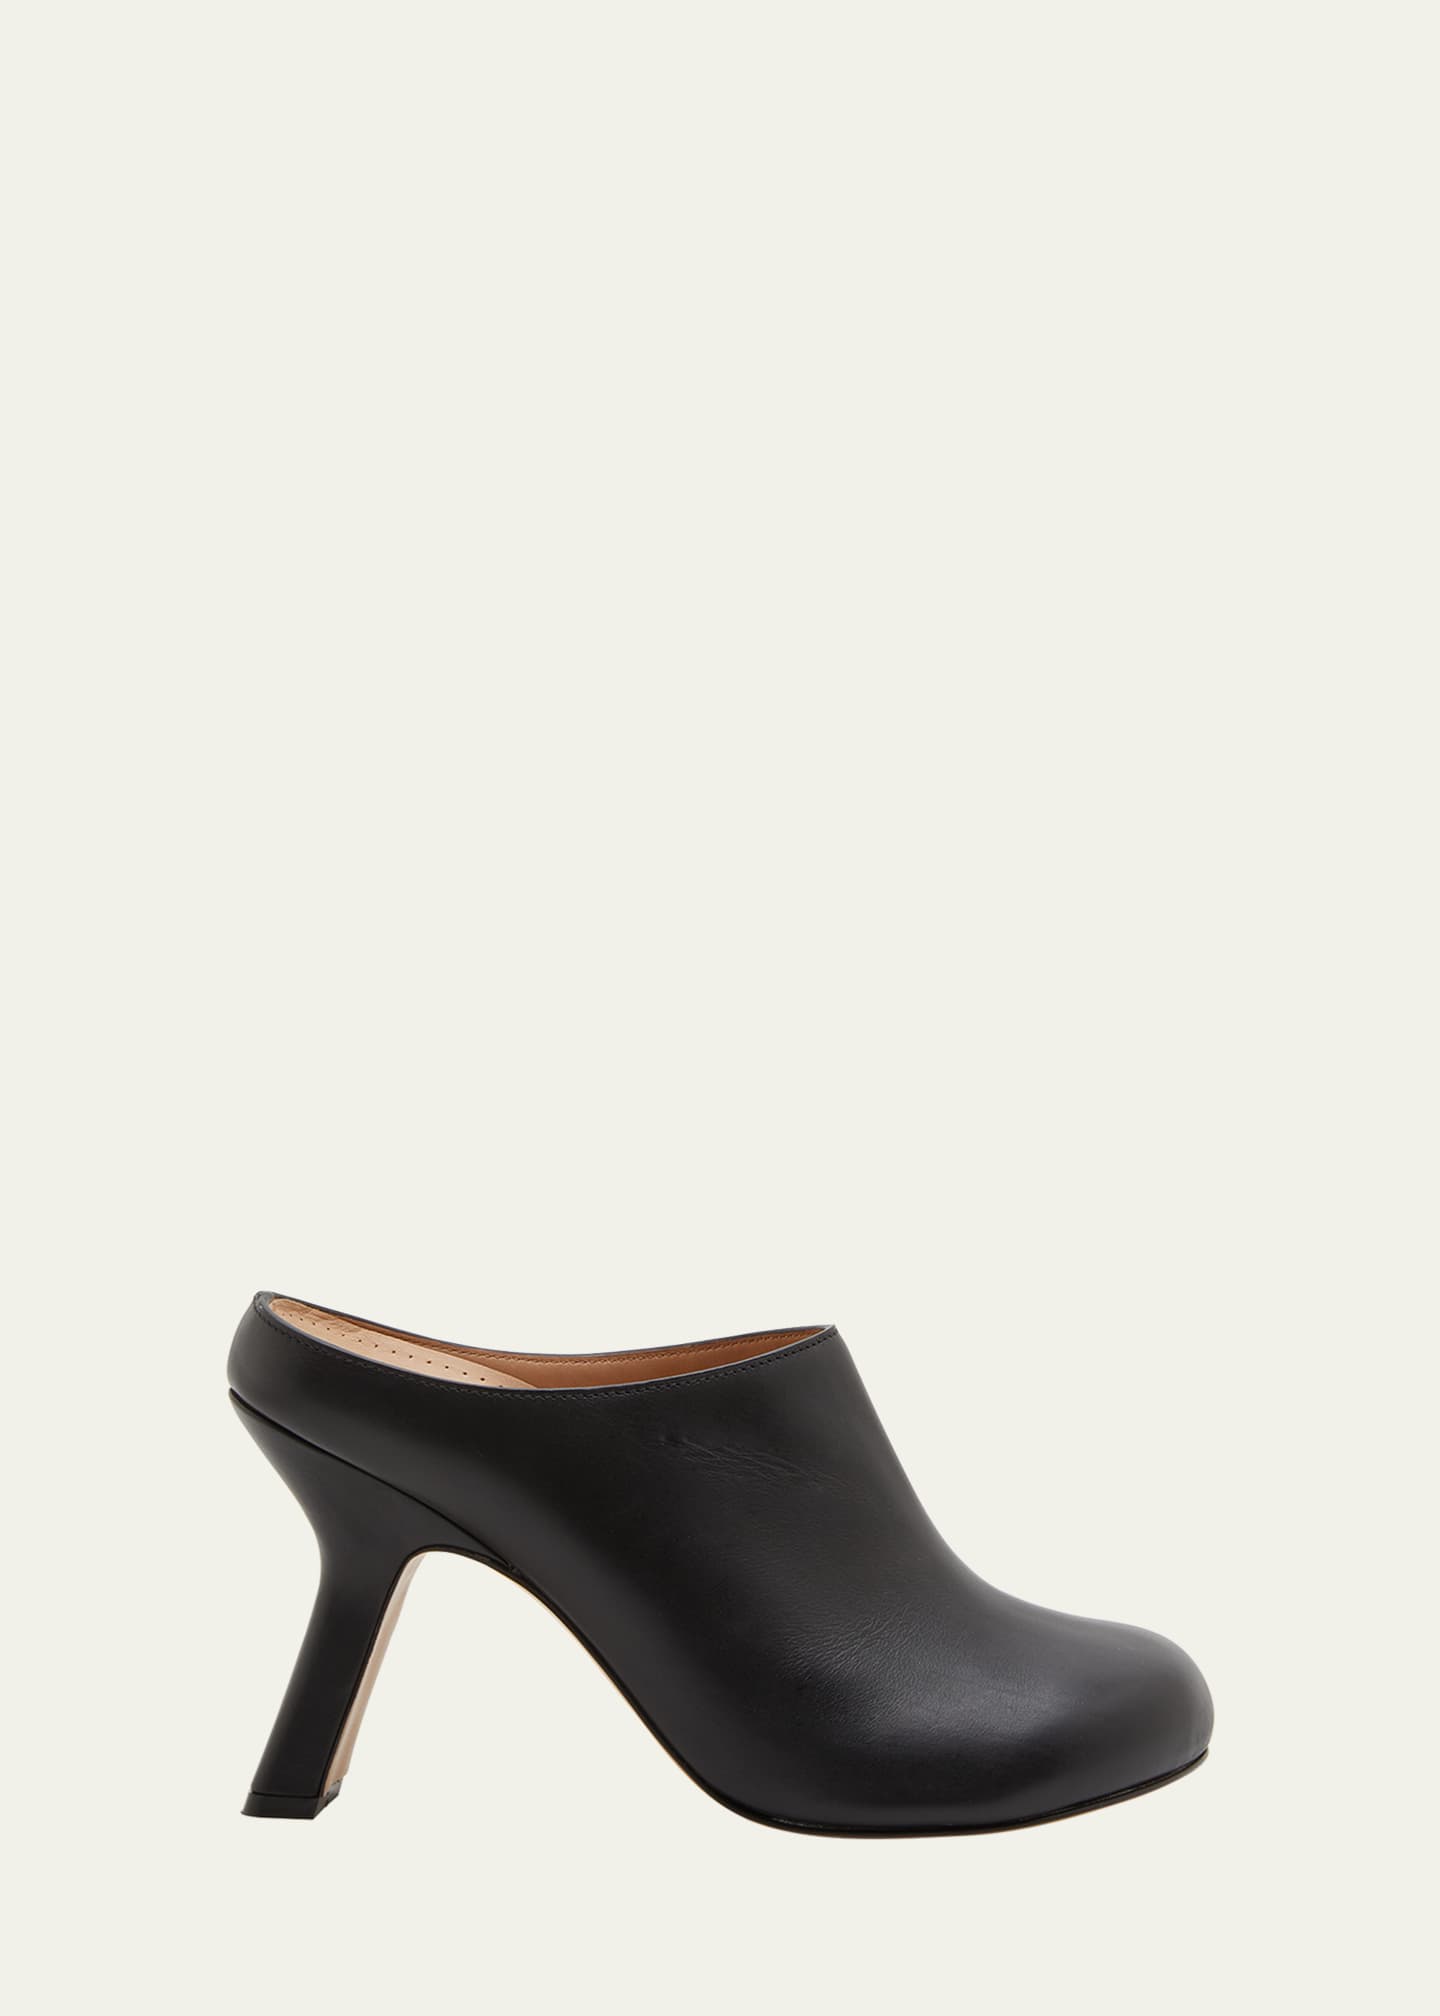 Loewe Women's Terra Heel Clog in Calfskin - Black - Mules - 36